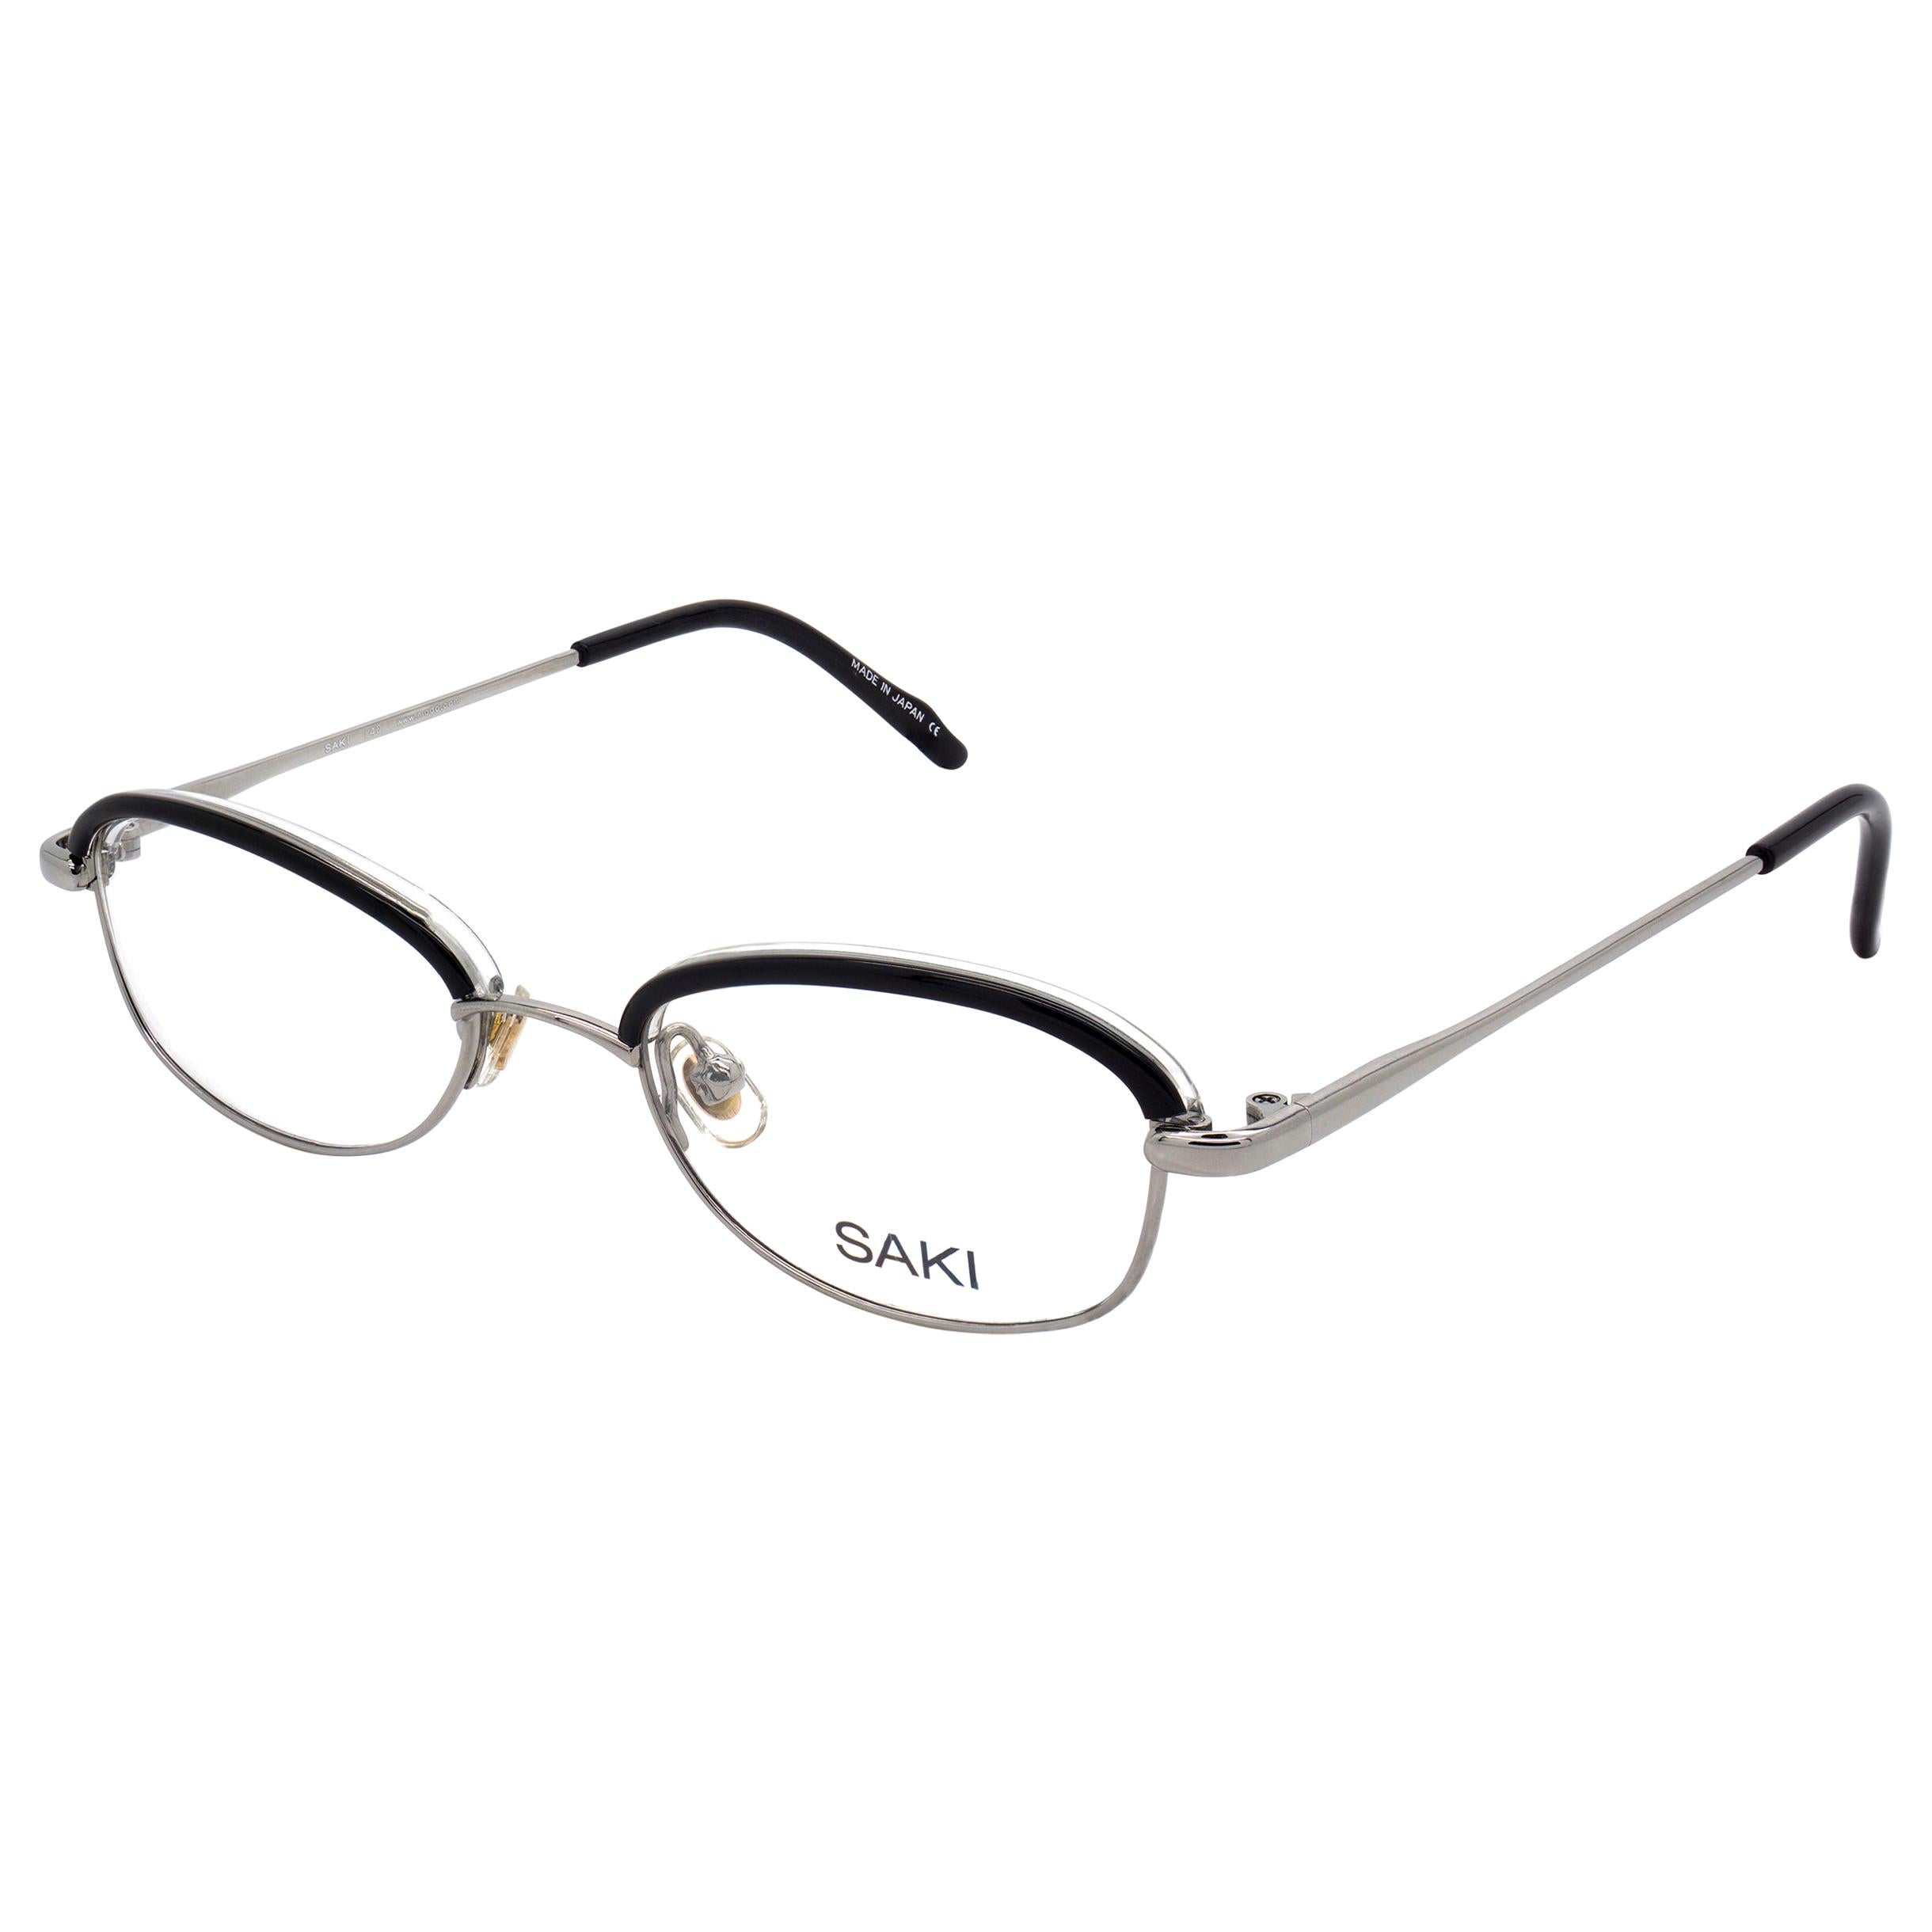 Japan Saki vintage eyeglasses frame For Sale